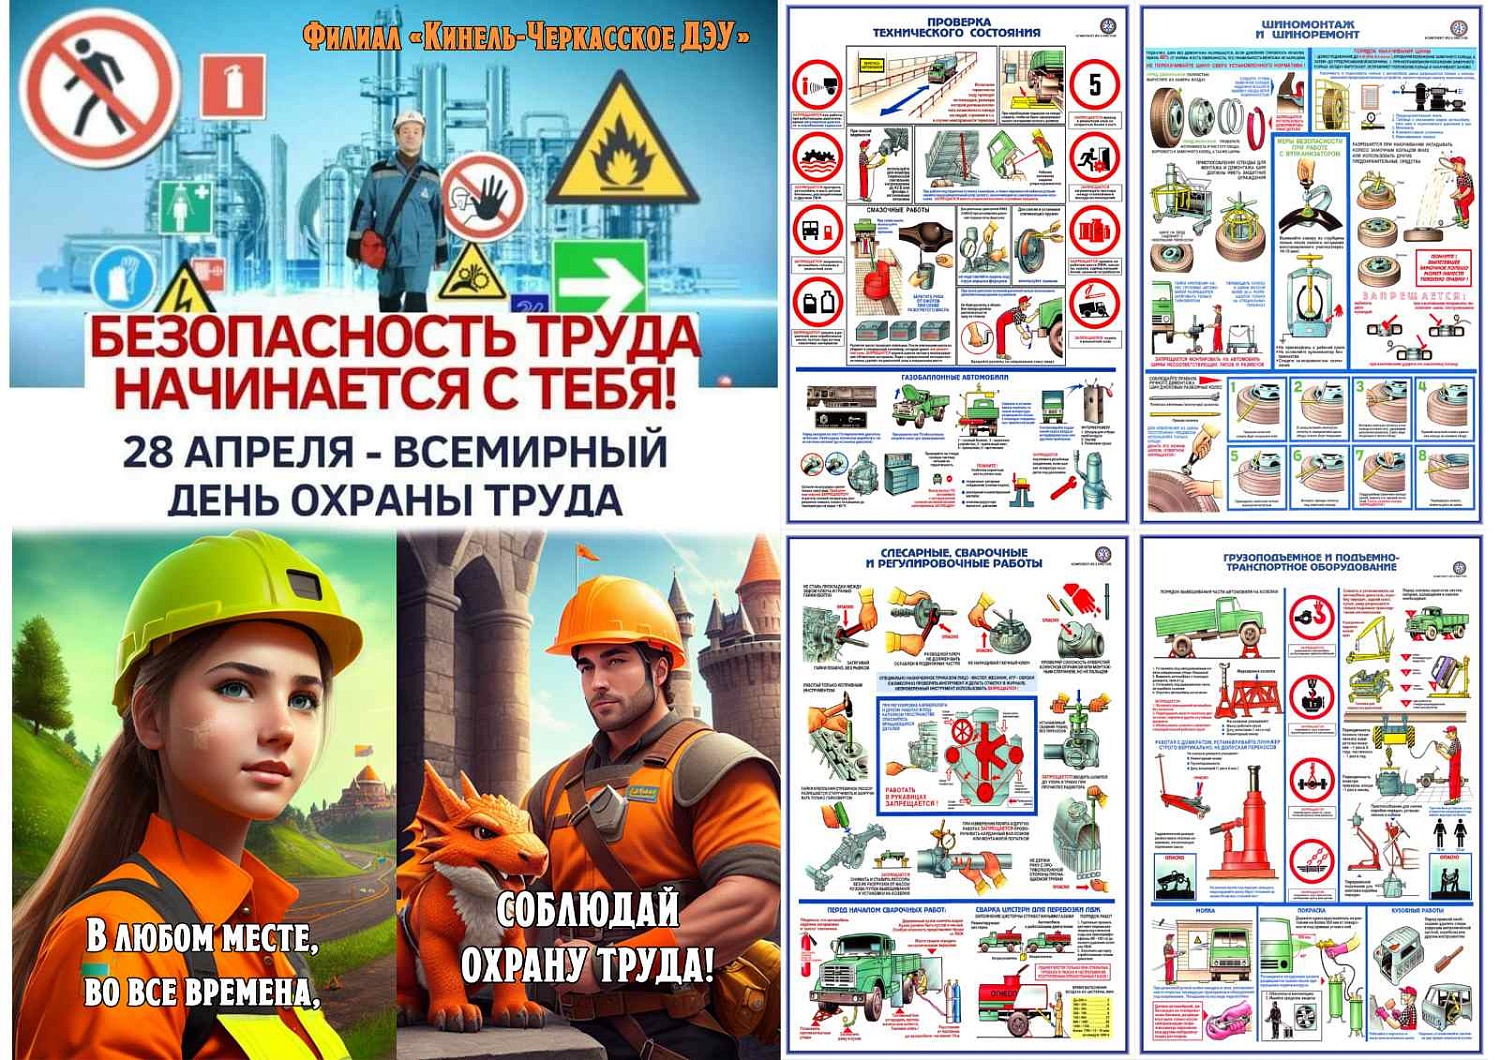 ГКП Самарской области «АСАДО» поздравляет со Всемирным Днём охраны труда!